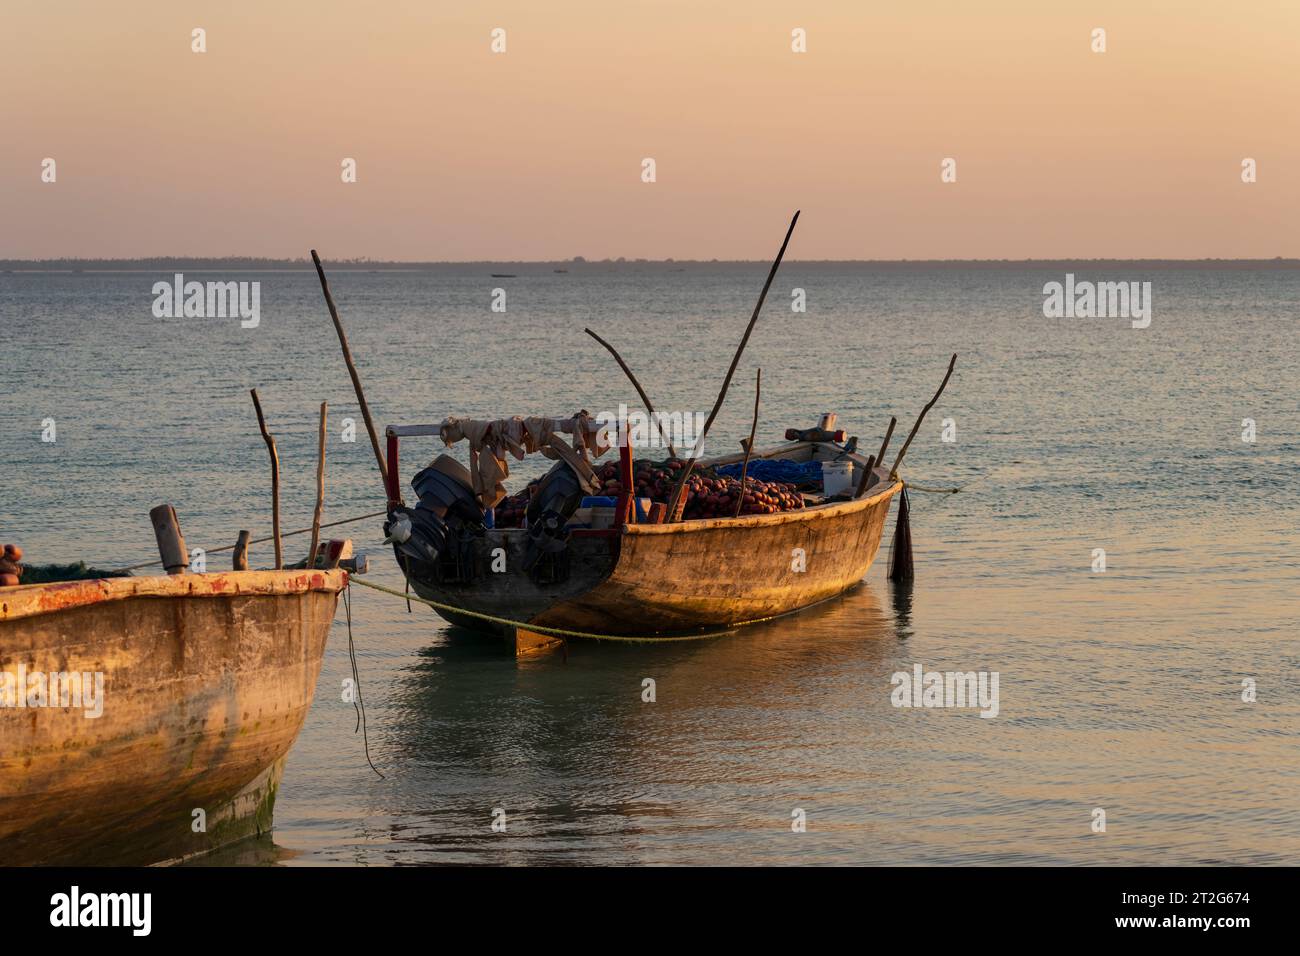 Bateaux de pêche en bois amarrés sur la plage en raison de marée basse au coucher du soleil, Zanzibar, Tanzanie Afrique Banque D'Images